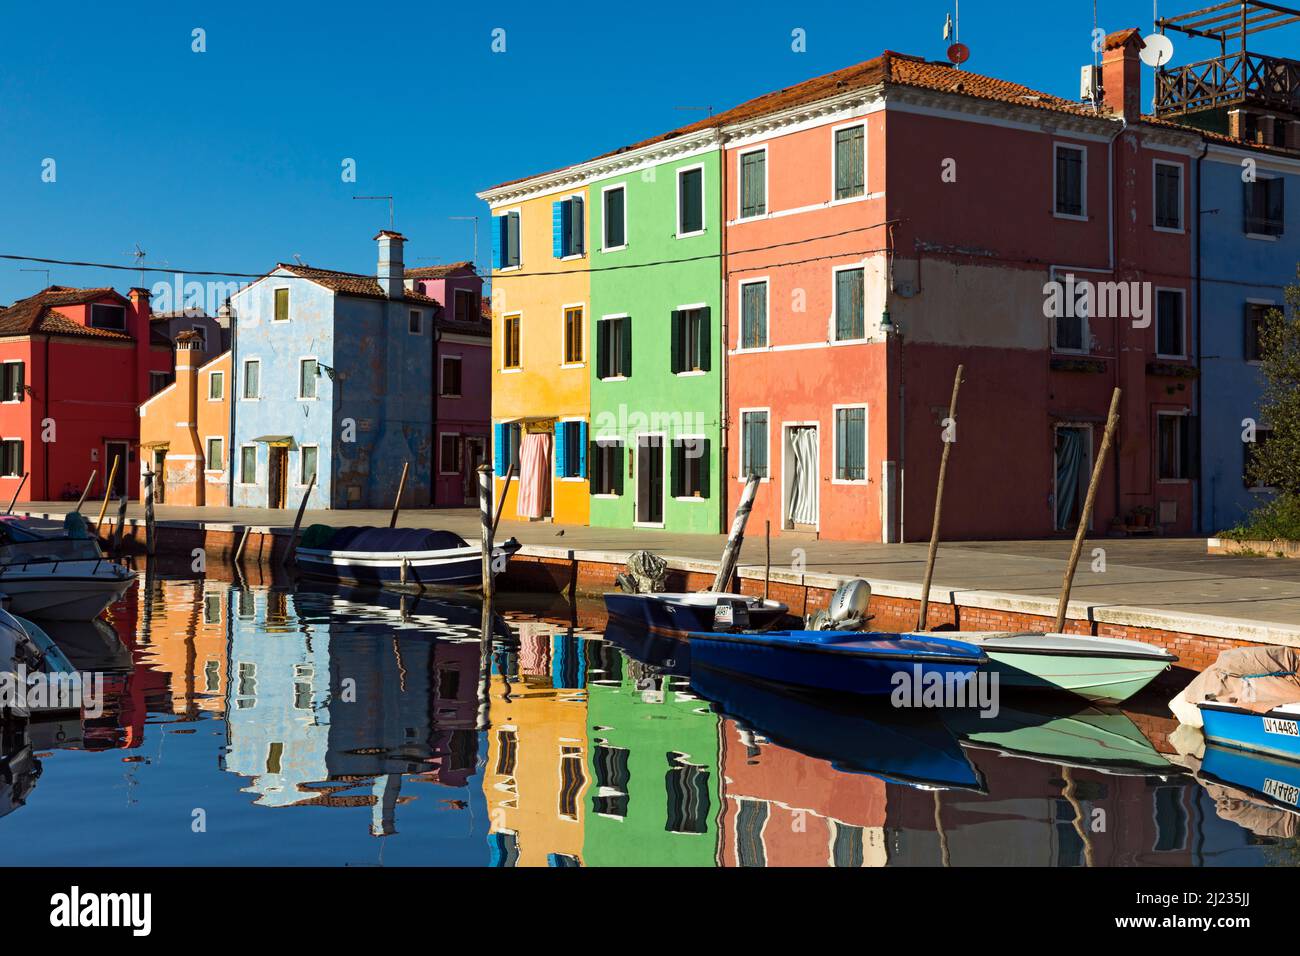 Italia, Venezia, case colorate e negozi su un canale dell'isola veneziana di Burano Foto Stock